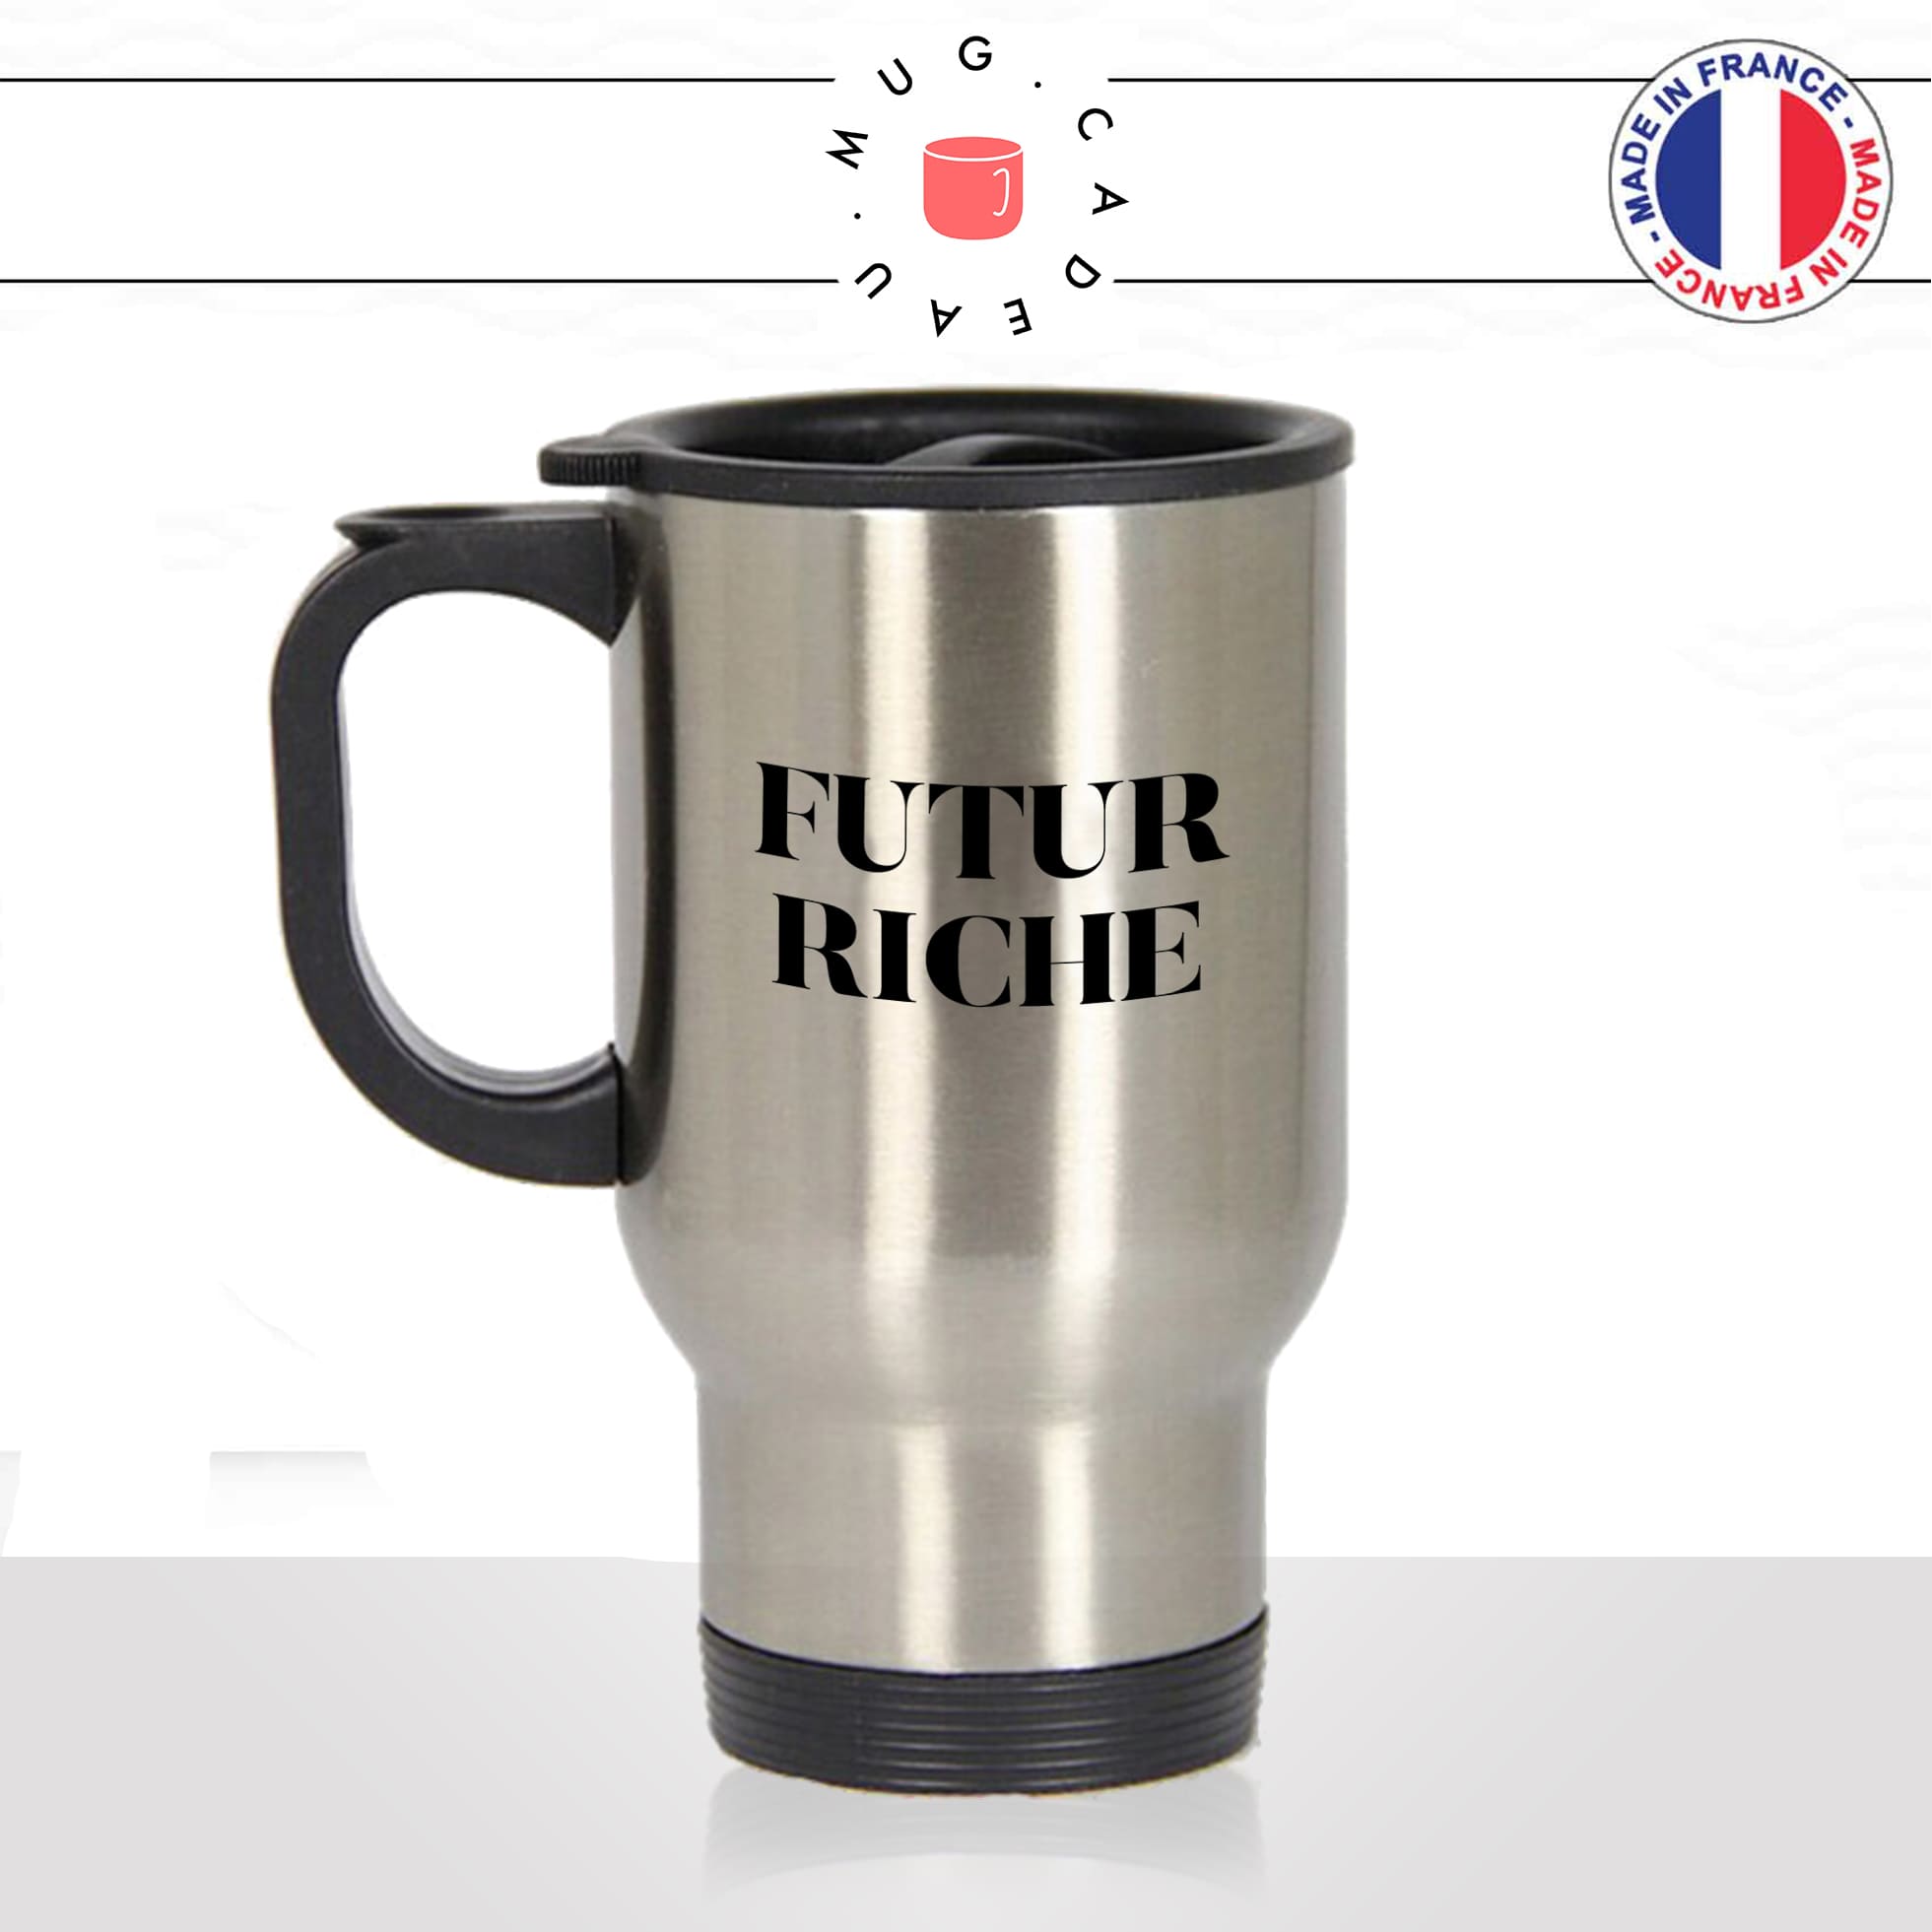 mug-tasse-thermos-isotherme-brillant-cadeau-homme-femme-futur-riche-richesse-millionaire-bif-argent-money-humour-café-thé-personnalisé-personnalisable